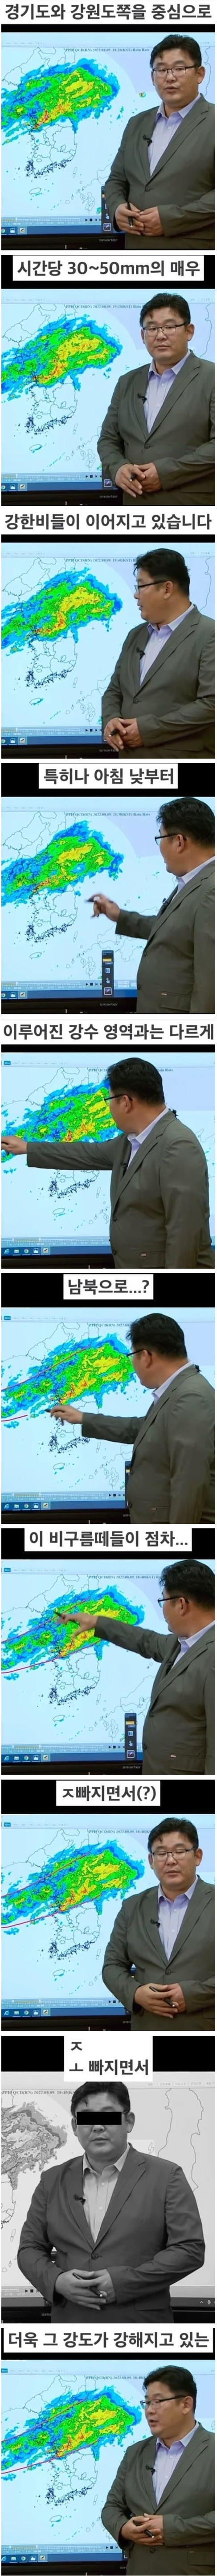 KBS 폭우 재난 방송사고